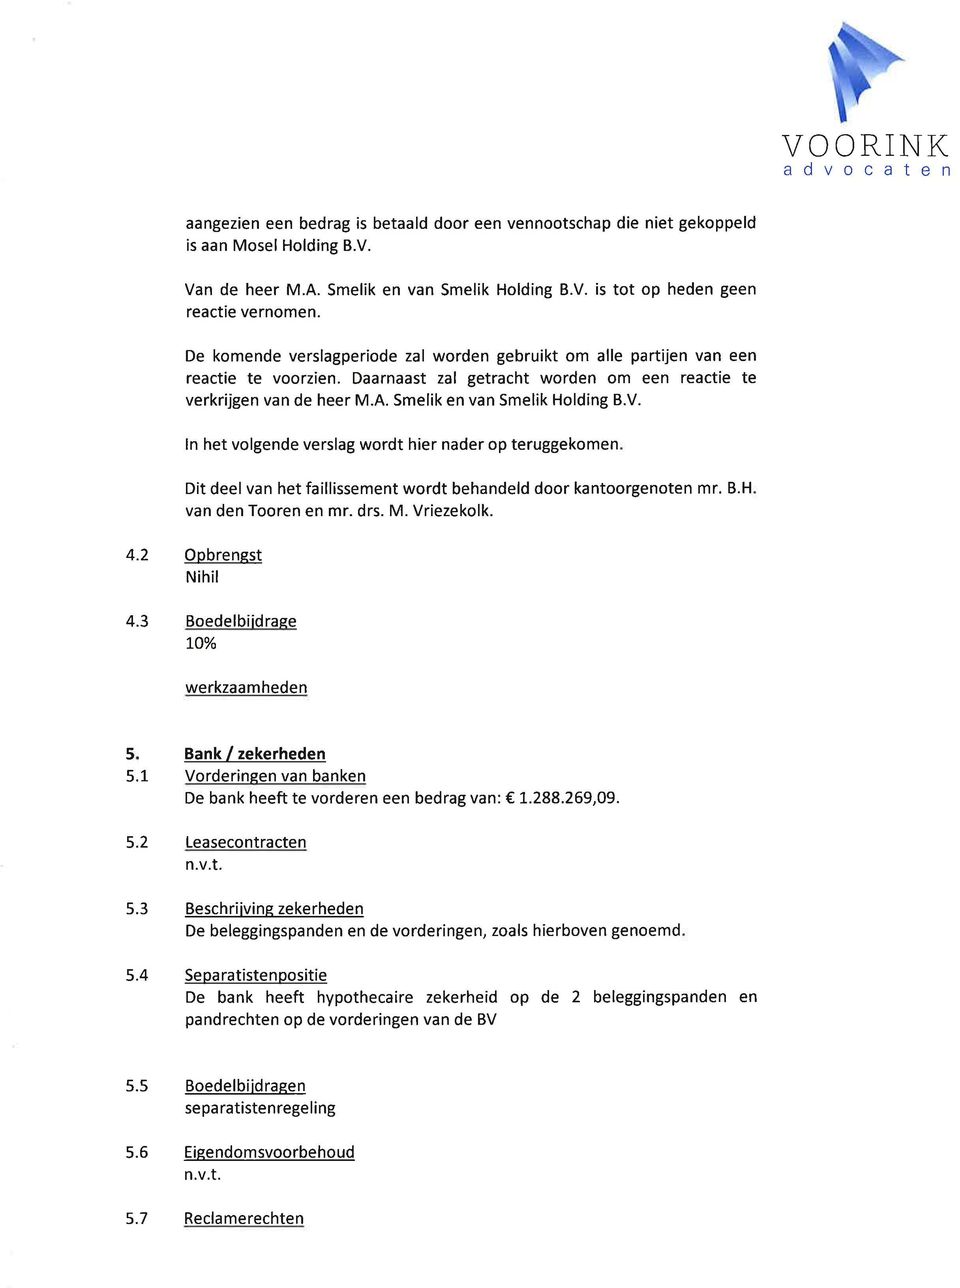 V. ln het volgende verslag wordt hier nader op teruggekomen Dit deel van het faillissement wordt behandeld door kantoorgenoten mr. B.H van den Tooren en mr. drs. M. Vriezekolk. 4.2 Opbrengst Nihil 4.